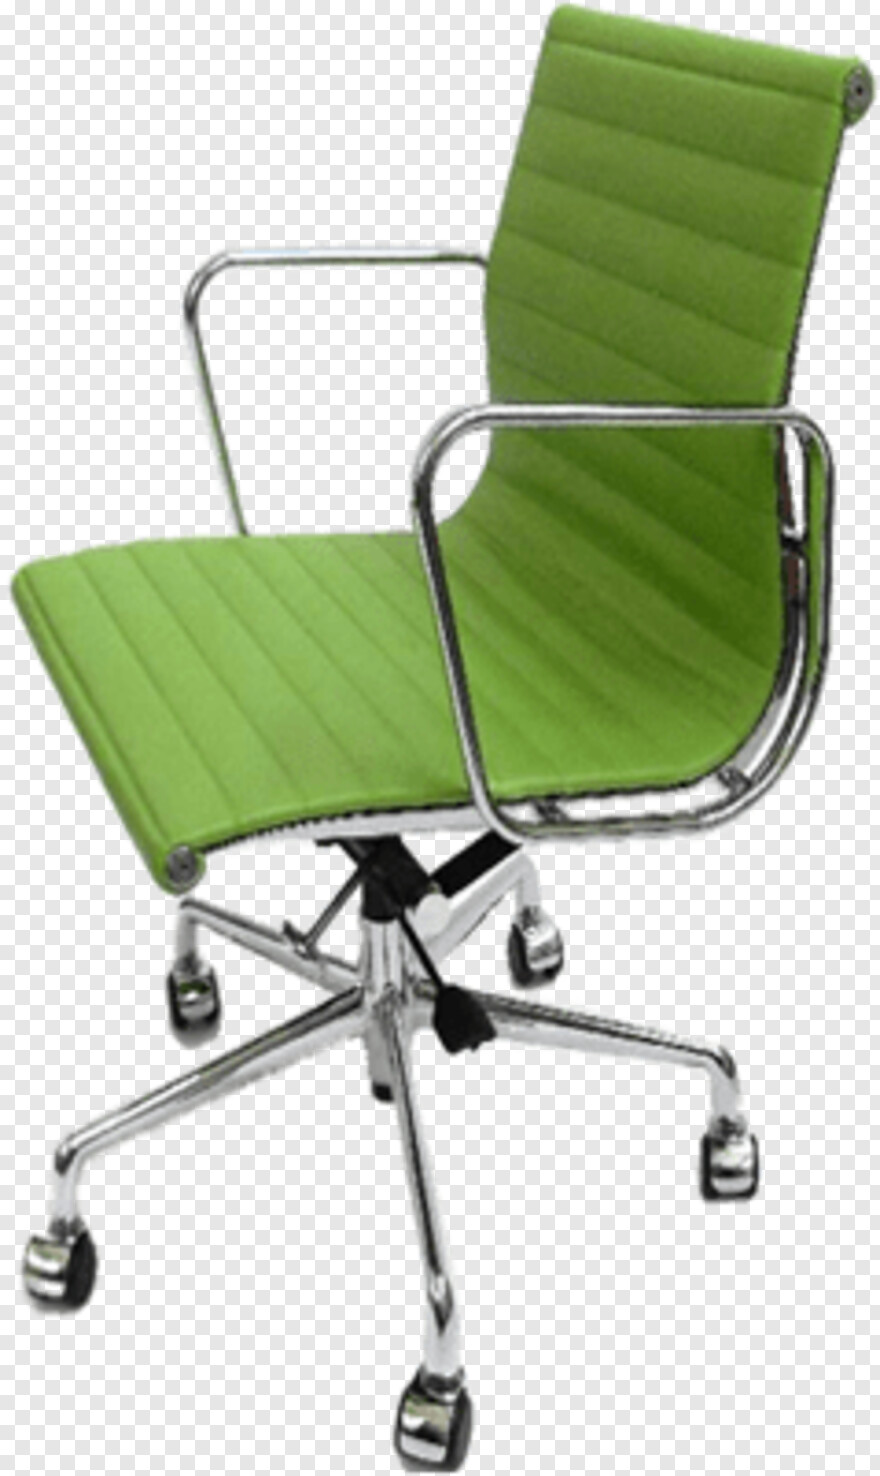 chair # 452032